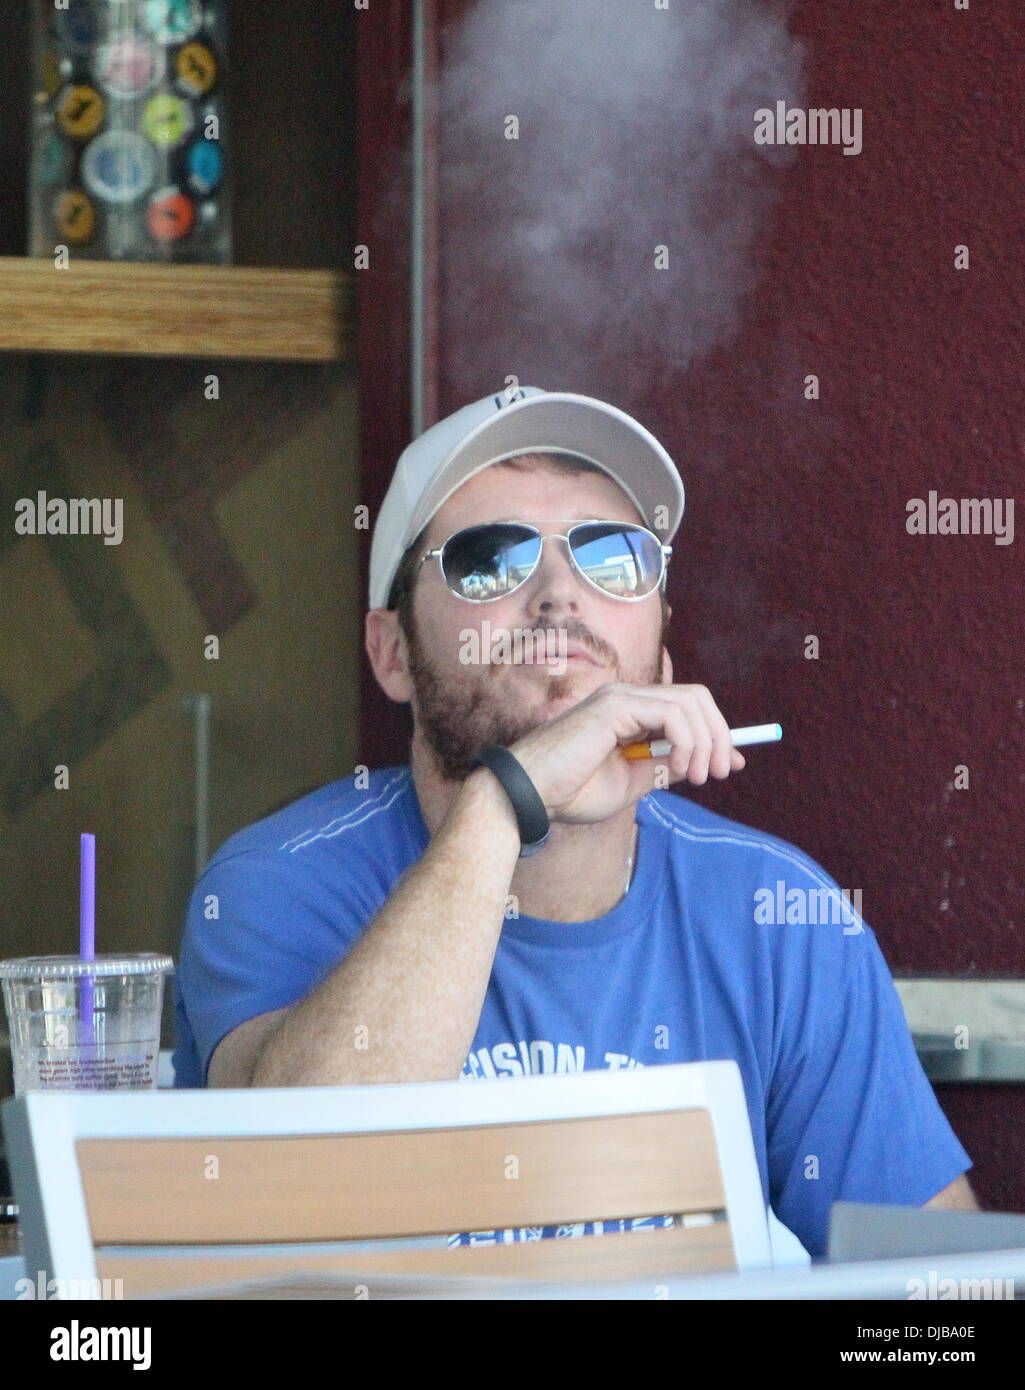 Kevin Connolly aan het roken
